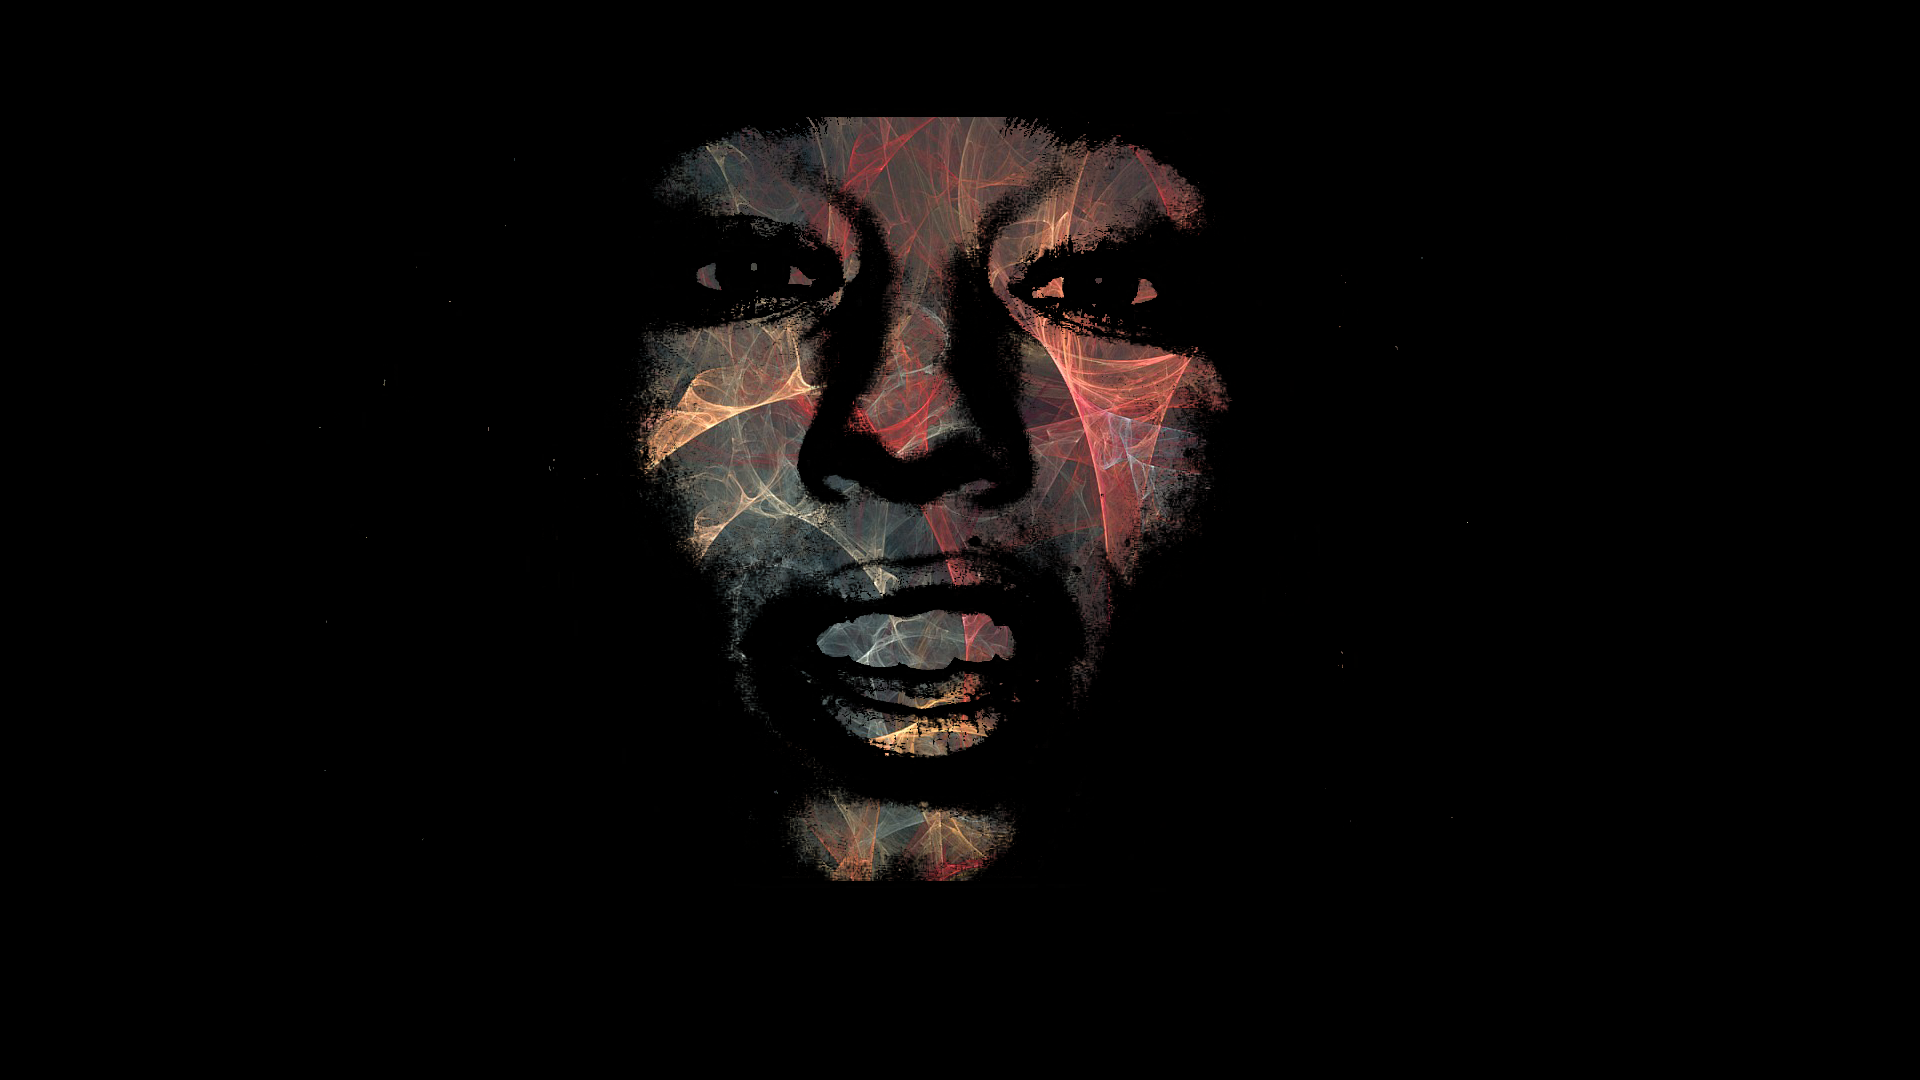 General 1920x1080 colorful face black artwork simple background black background closeup portrait